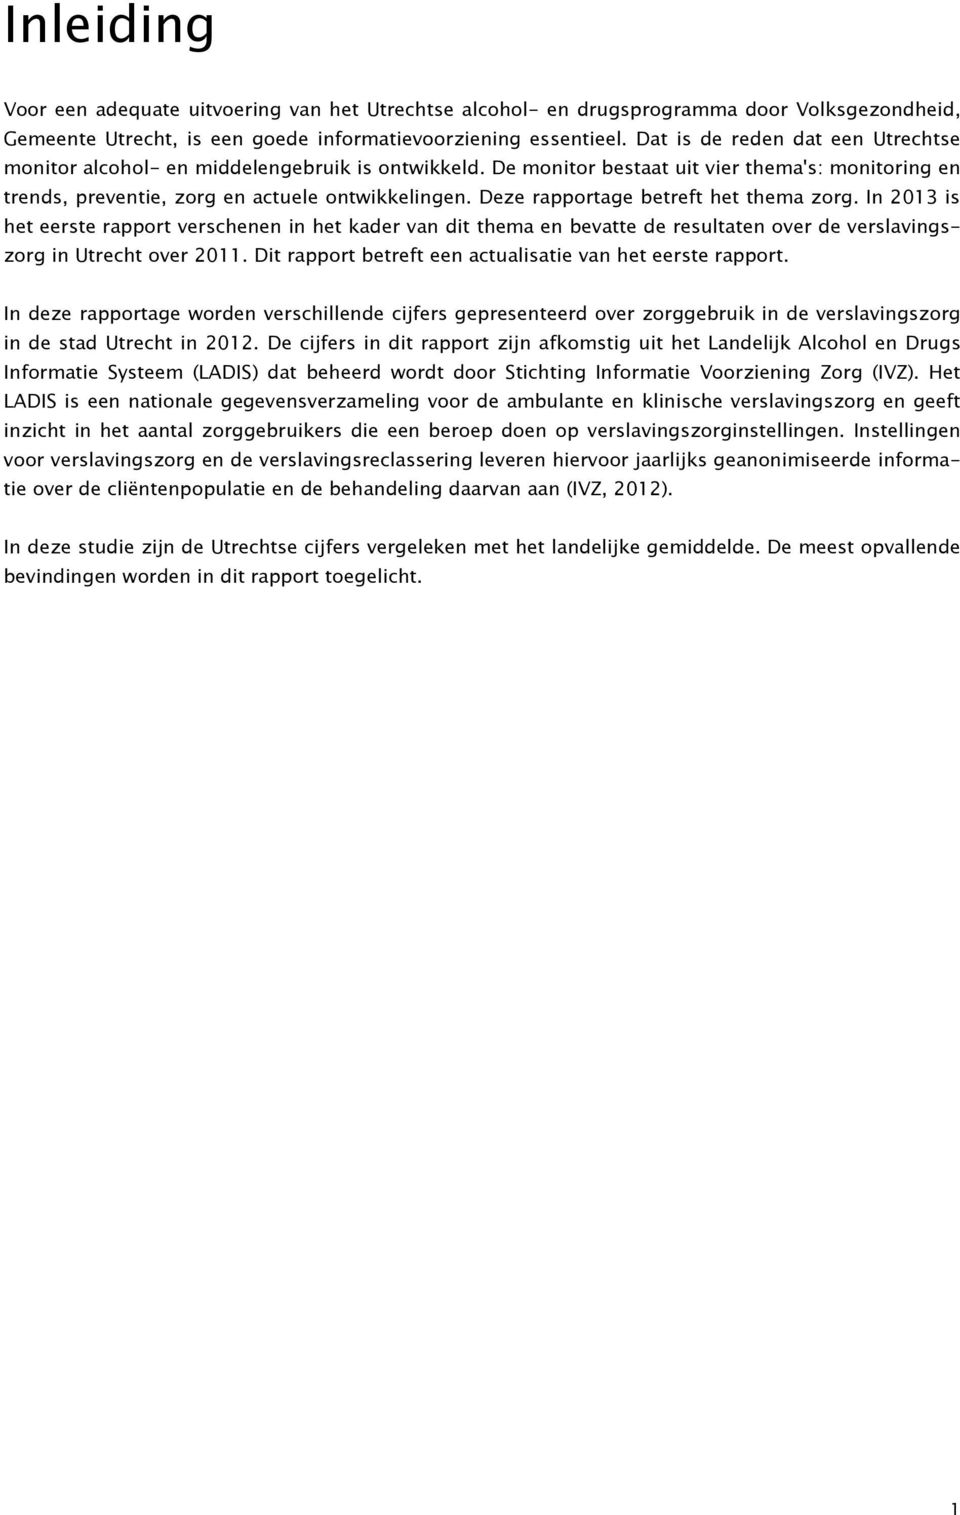 Deze rapportage betreft het thema zorg. In 2013 is het eerste rapport verschenen in het kader van dit thema en bevatte de resultaten over de verslavingszorg in Utrecht over 2011.